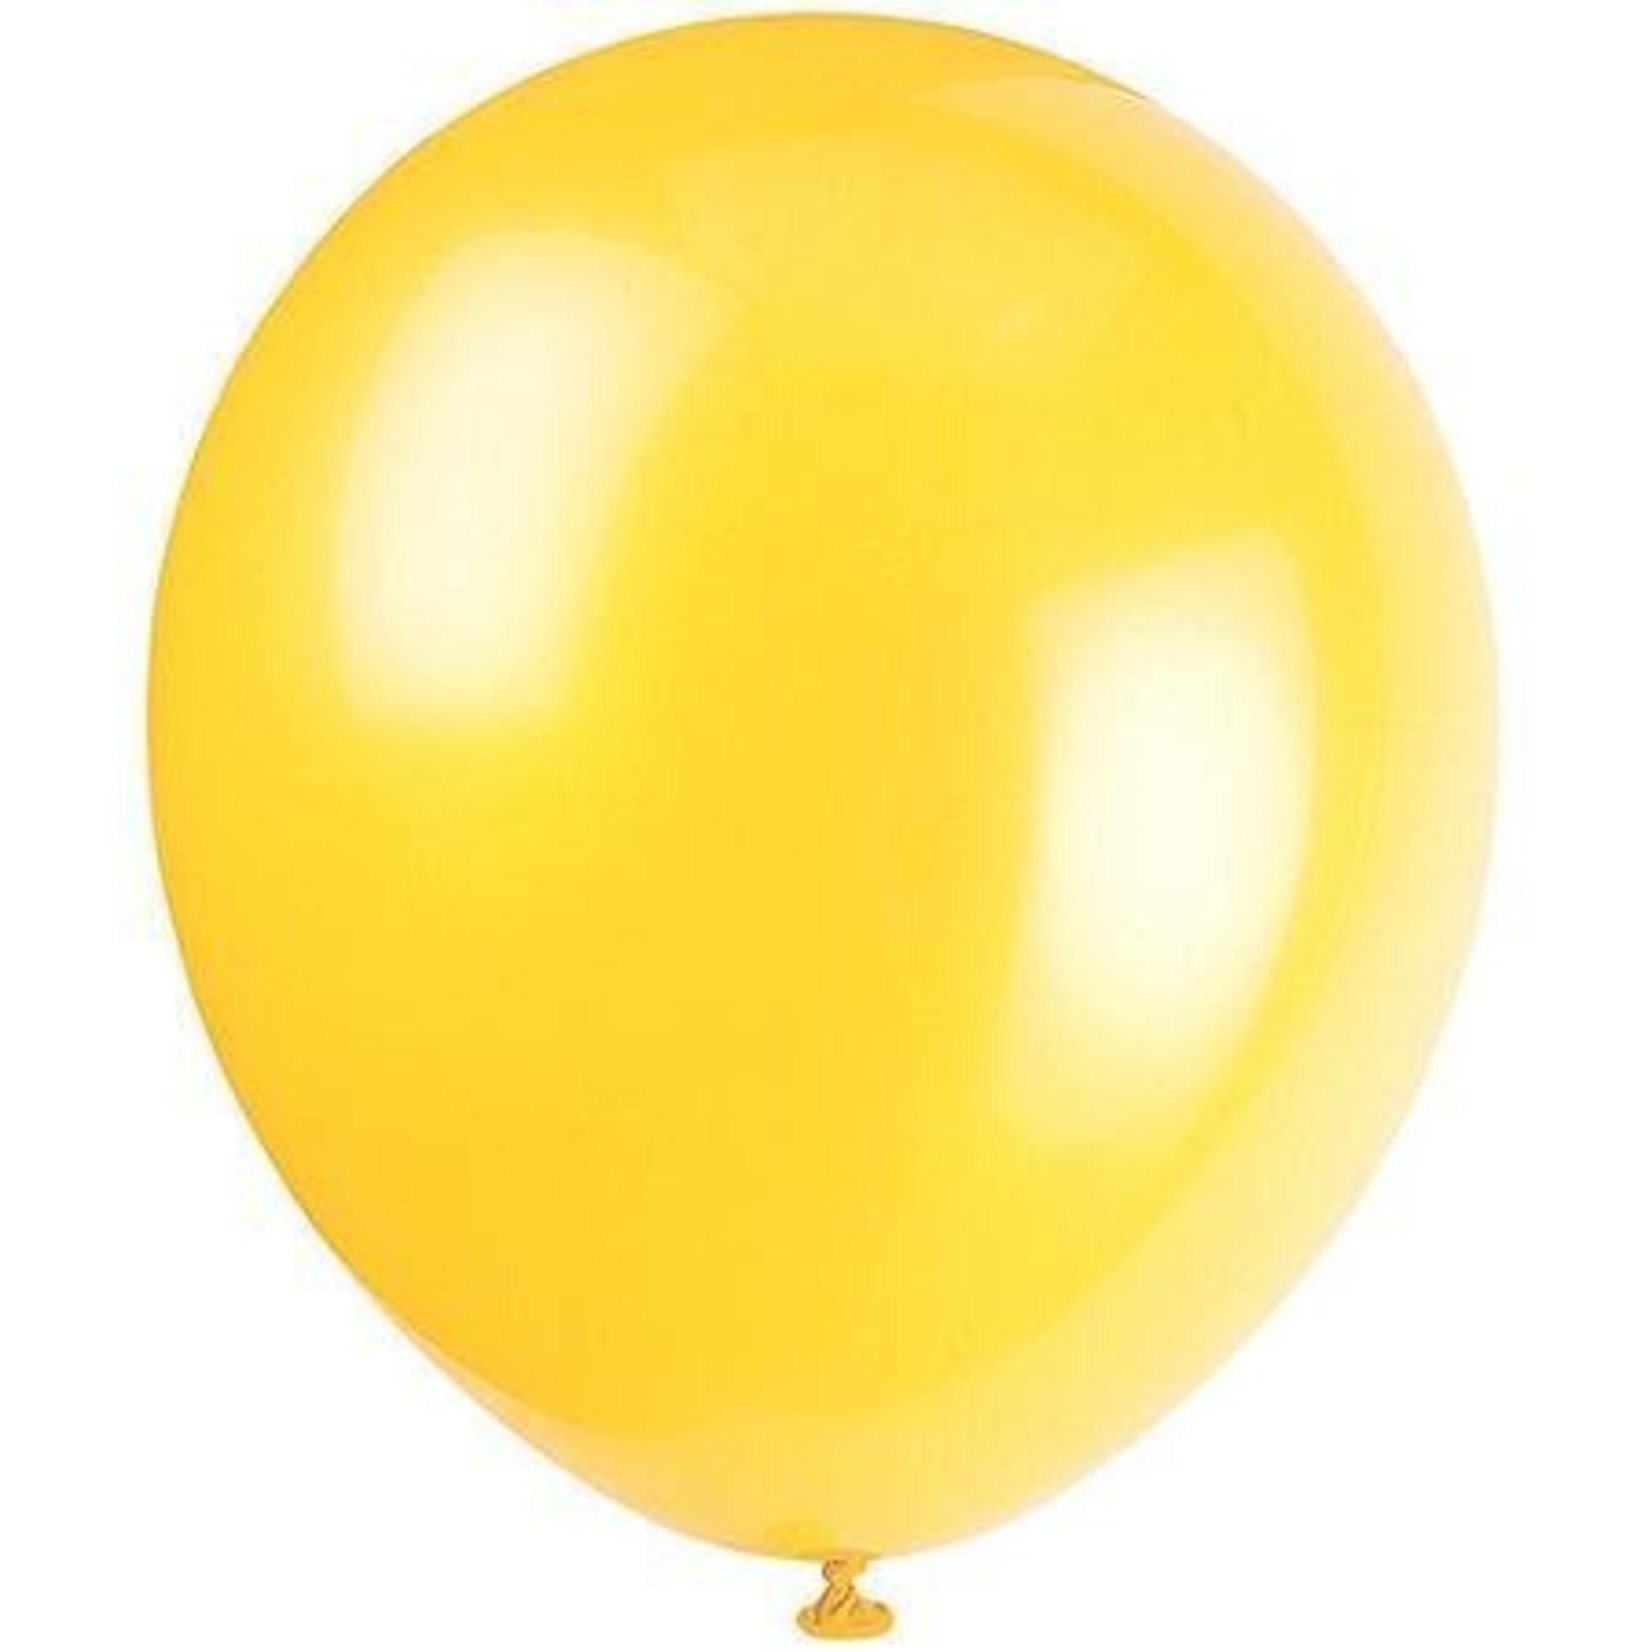 Balloon-Latex-Sunburst Yellow-9''-144pk